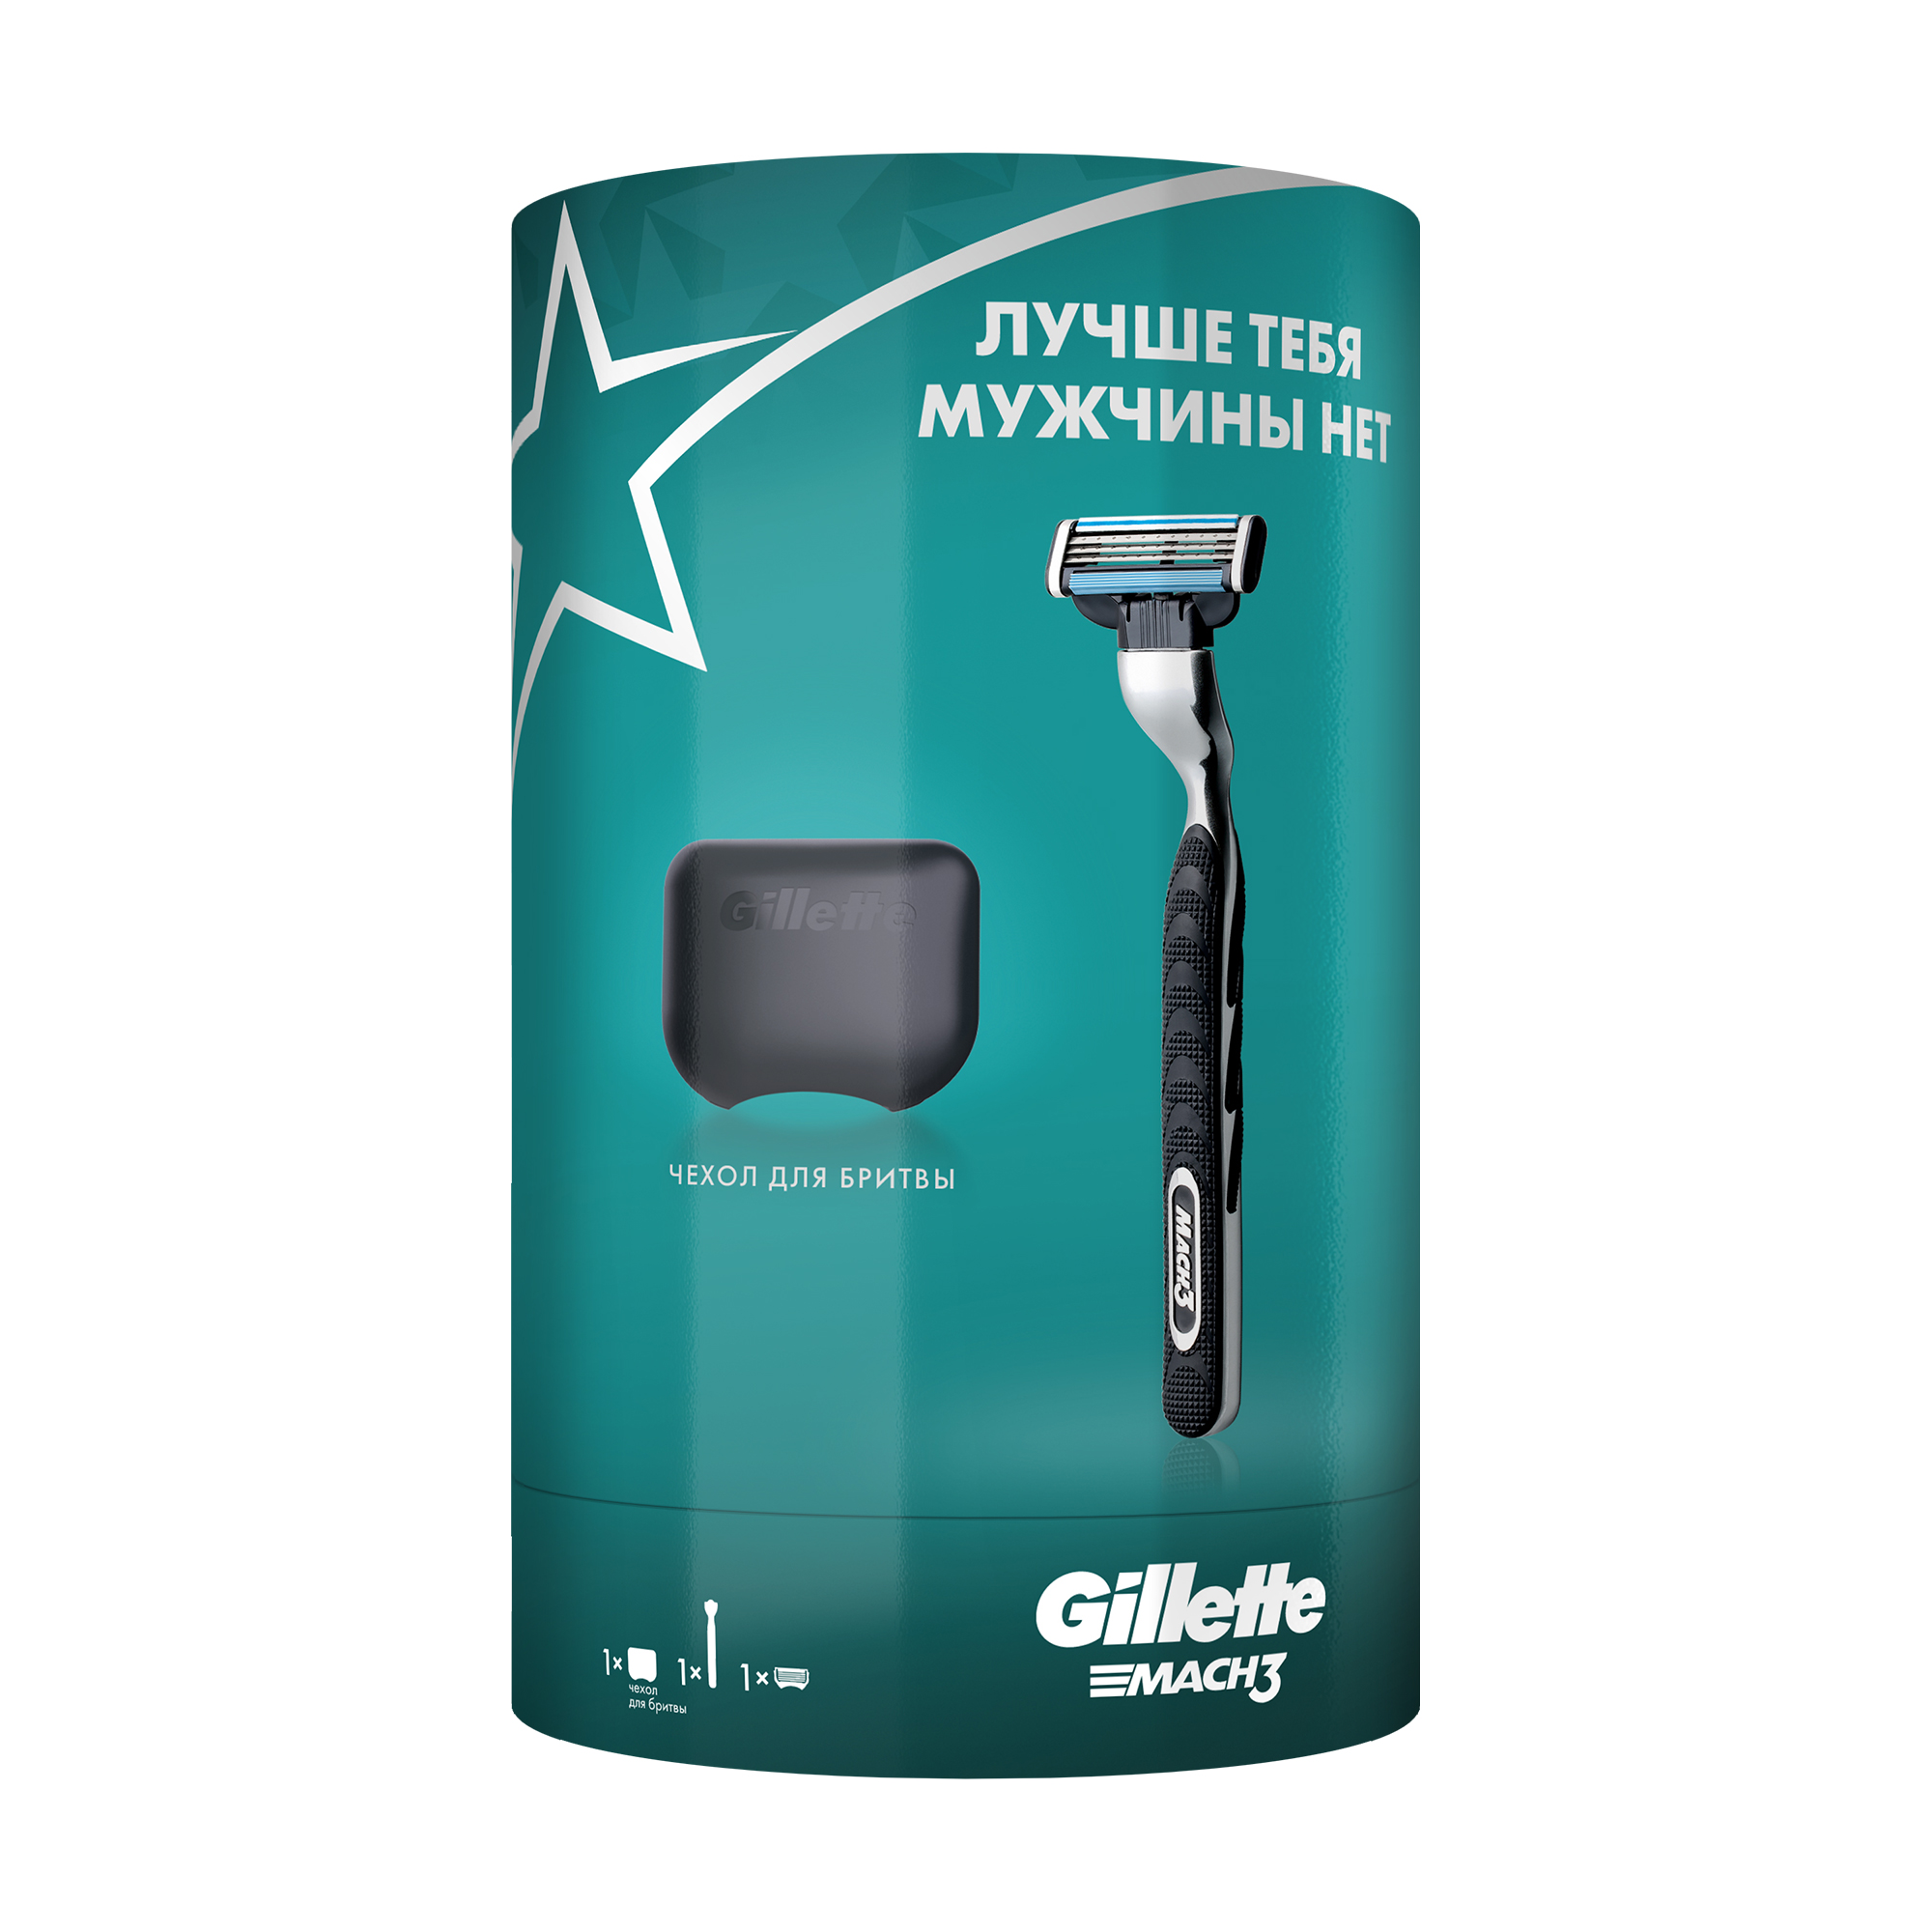 Подарочный набор мужской Gillette Mach3 бритва с 1 кассетой + чехол подарочный набор мужской gillette